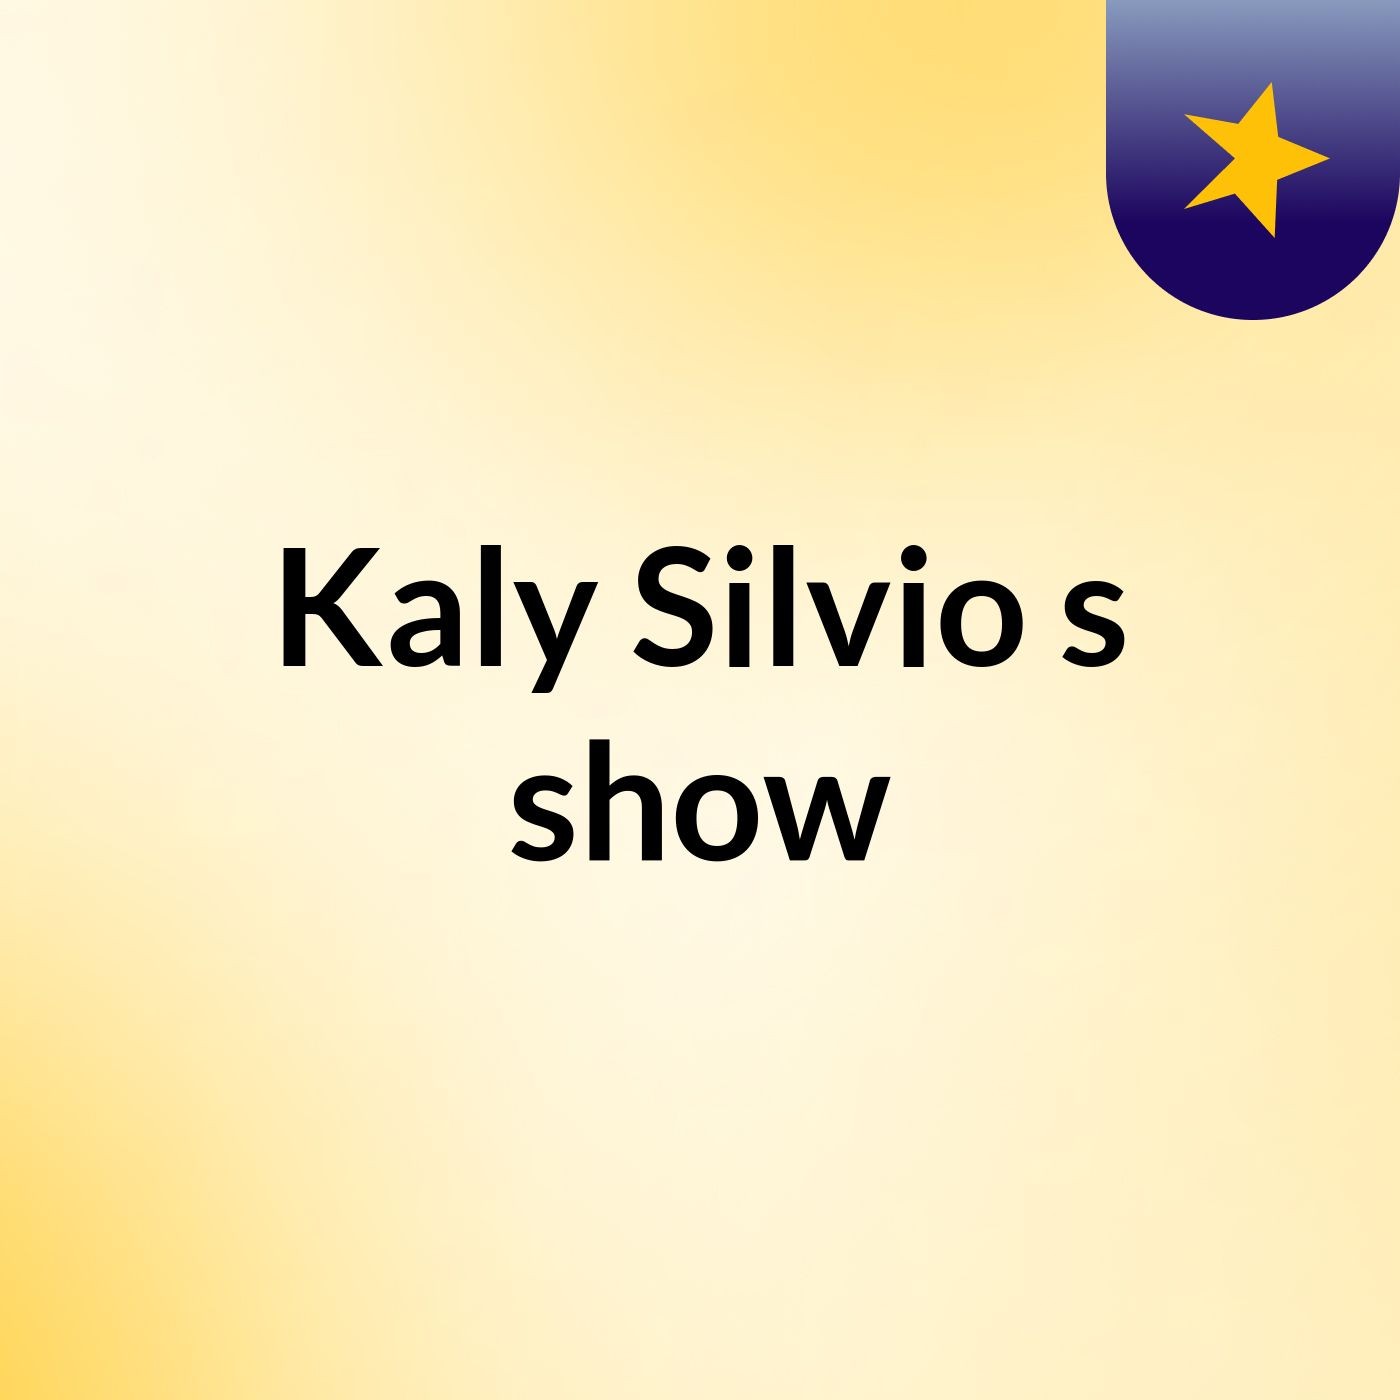 Kaly Silvio's show